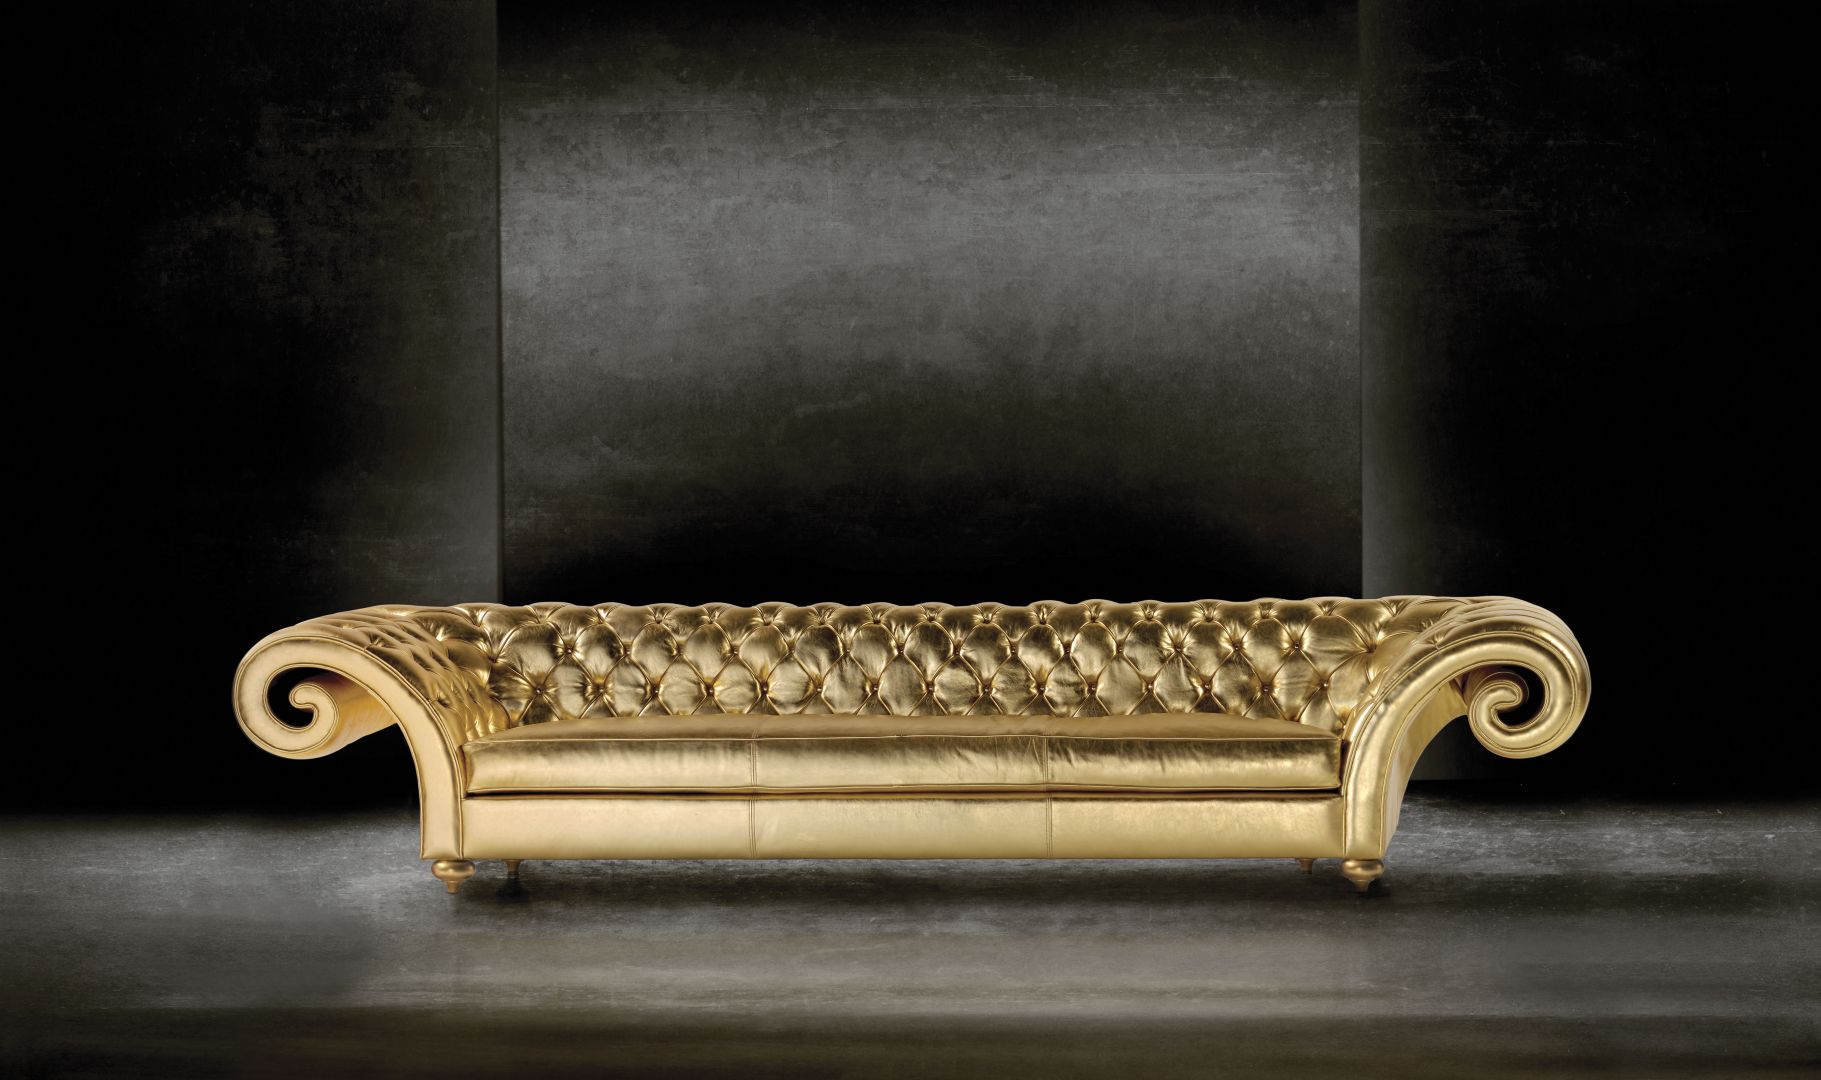 Złota, pikowana sofa sprawi, że wnętrze zyska niezwykle luksusowy wygląd. Fot. Touched Interiors